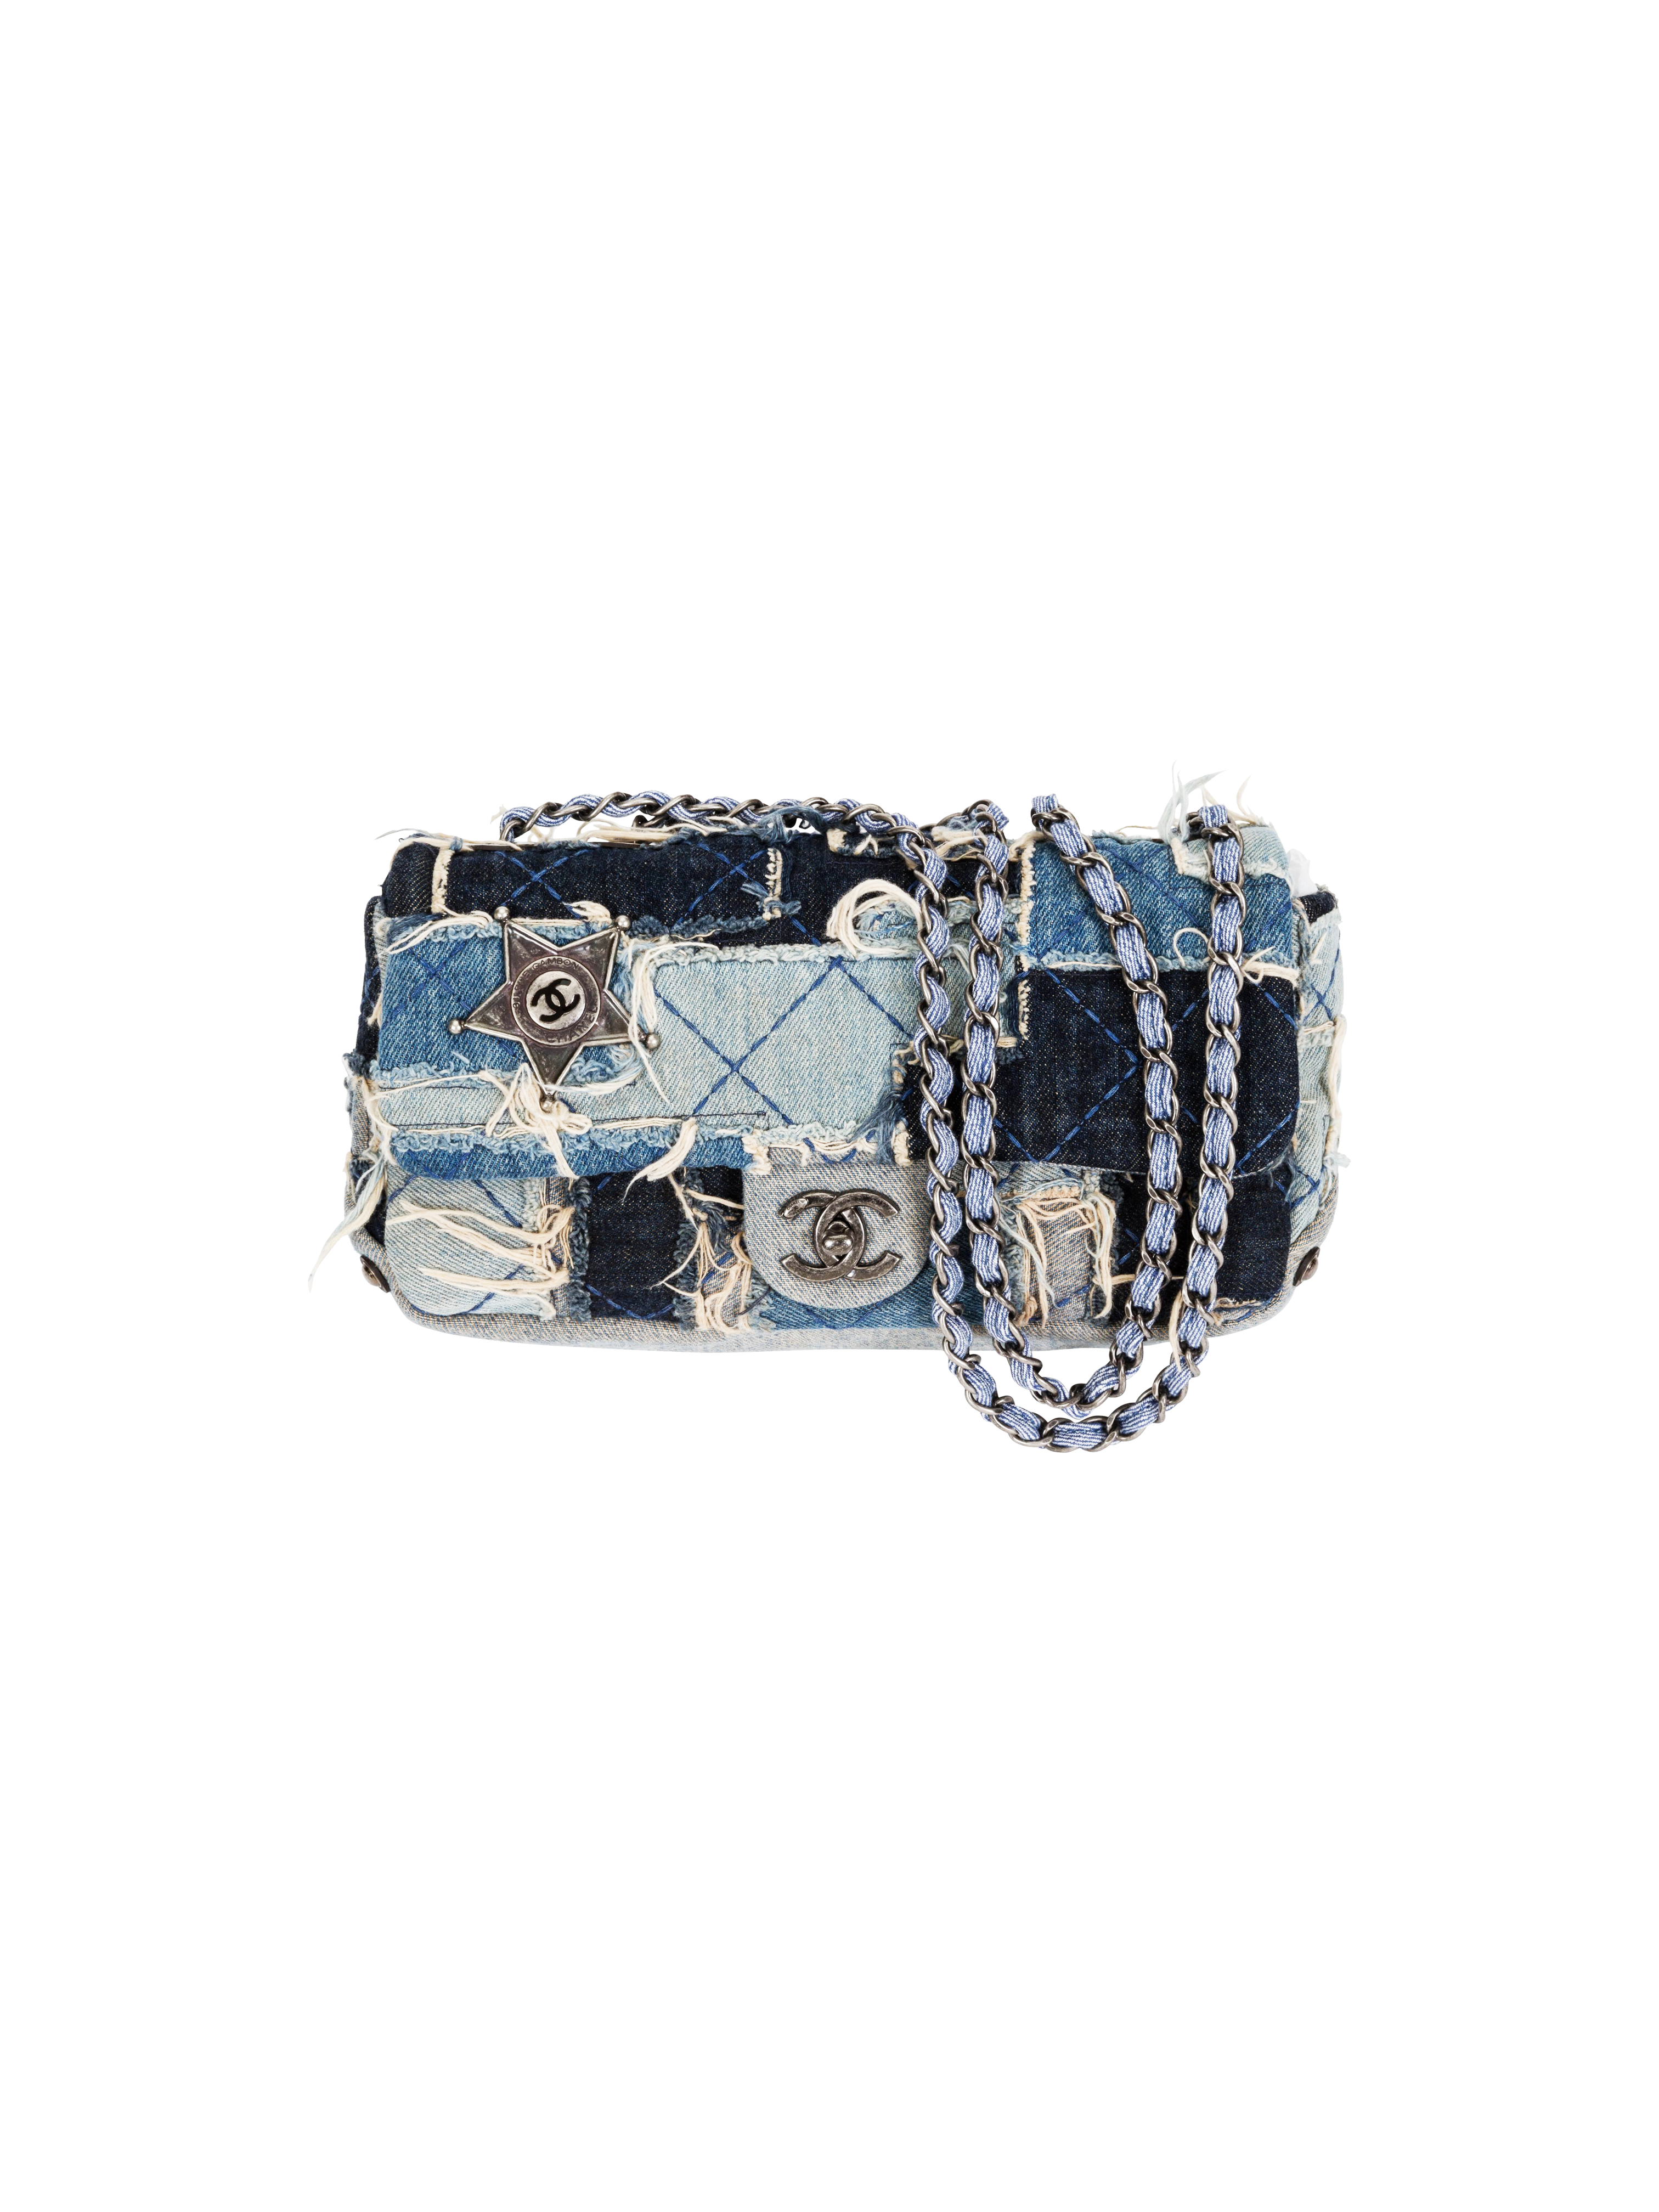 Chanel Paris Dallas 2014 Runway Fringe Tote Shoulder Bag For Sale